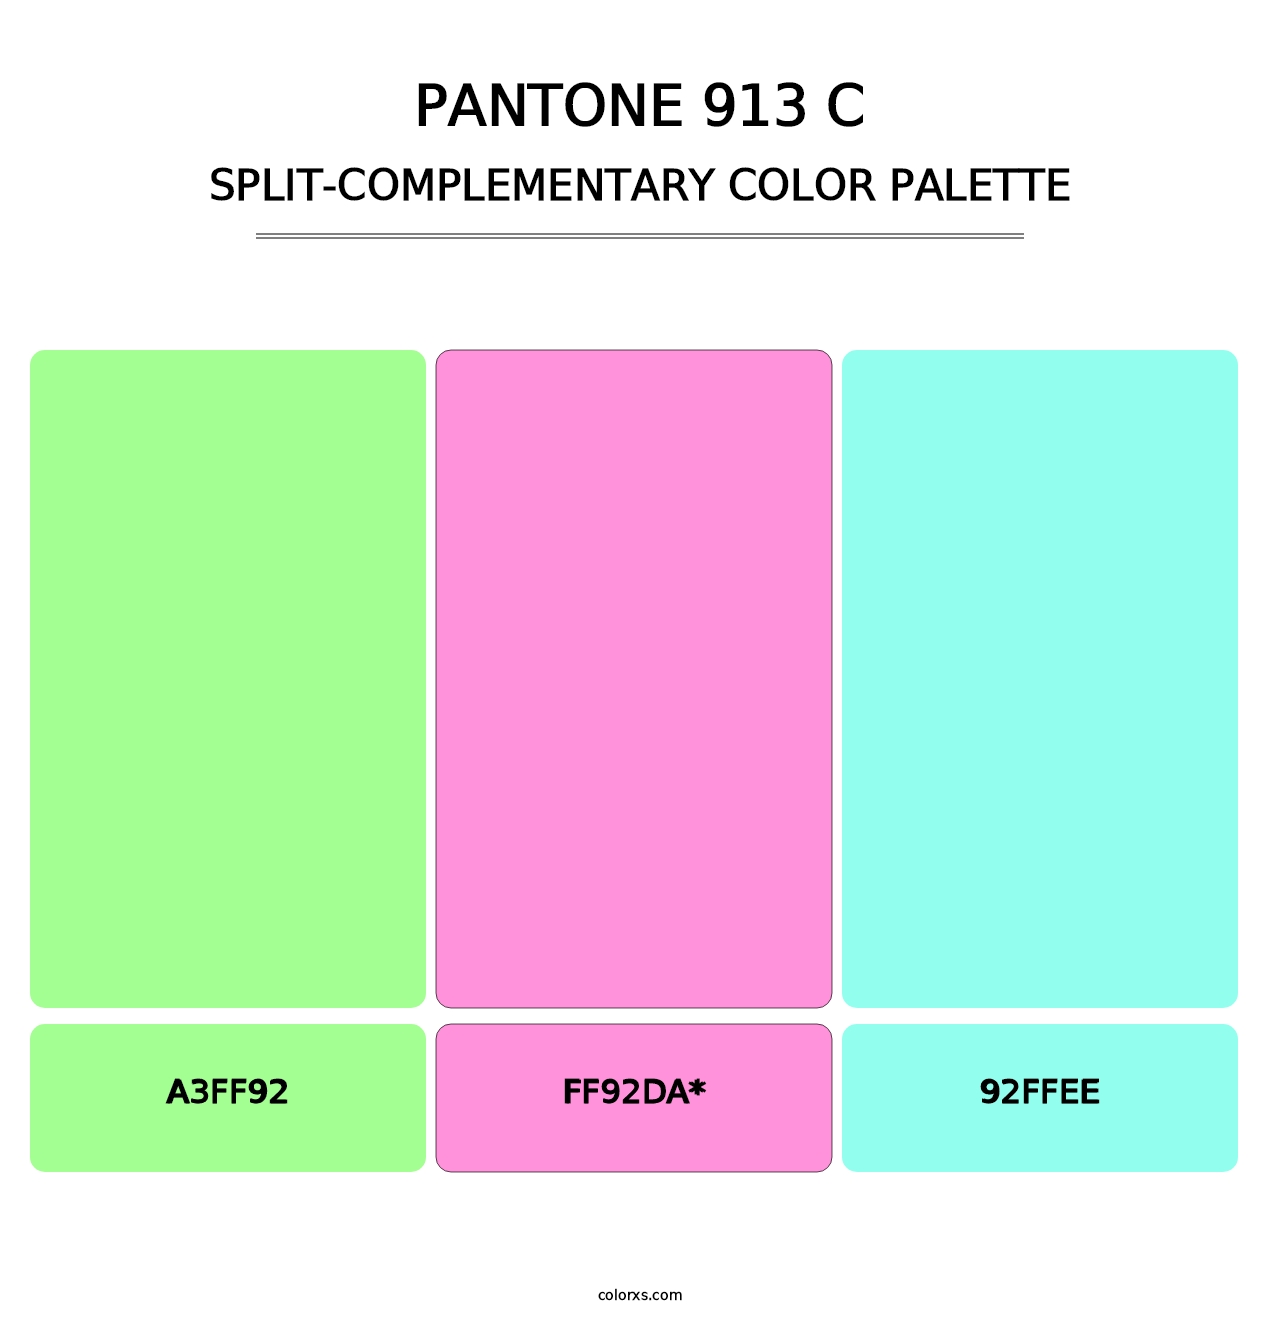 PANTONE 913 C - Split-Complementary Color Palette